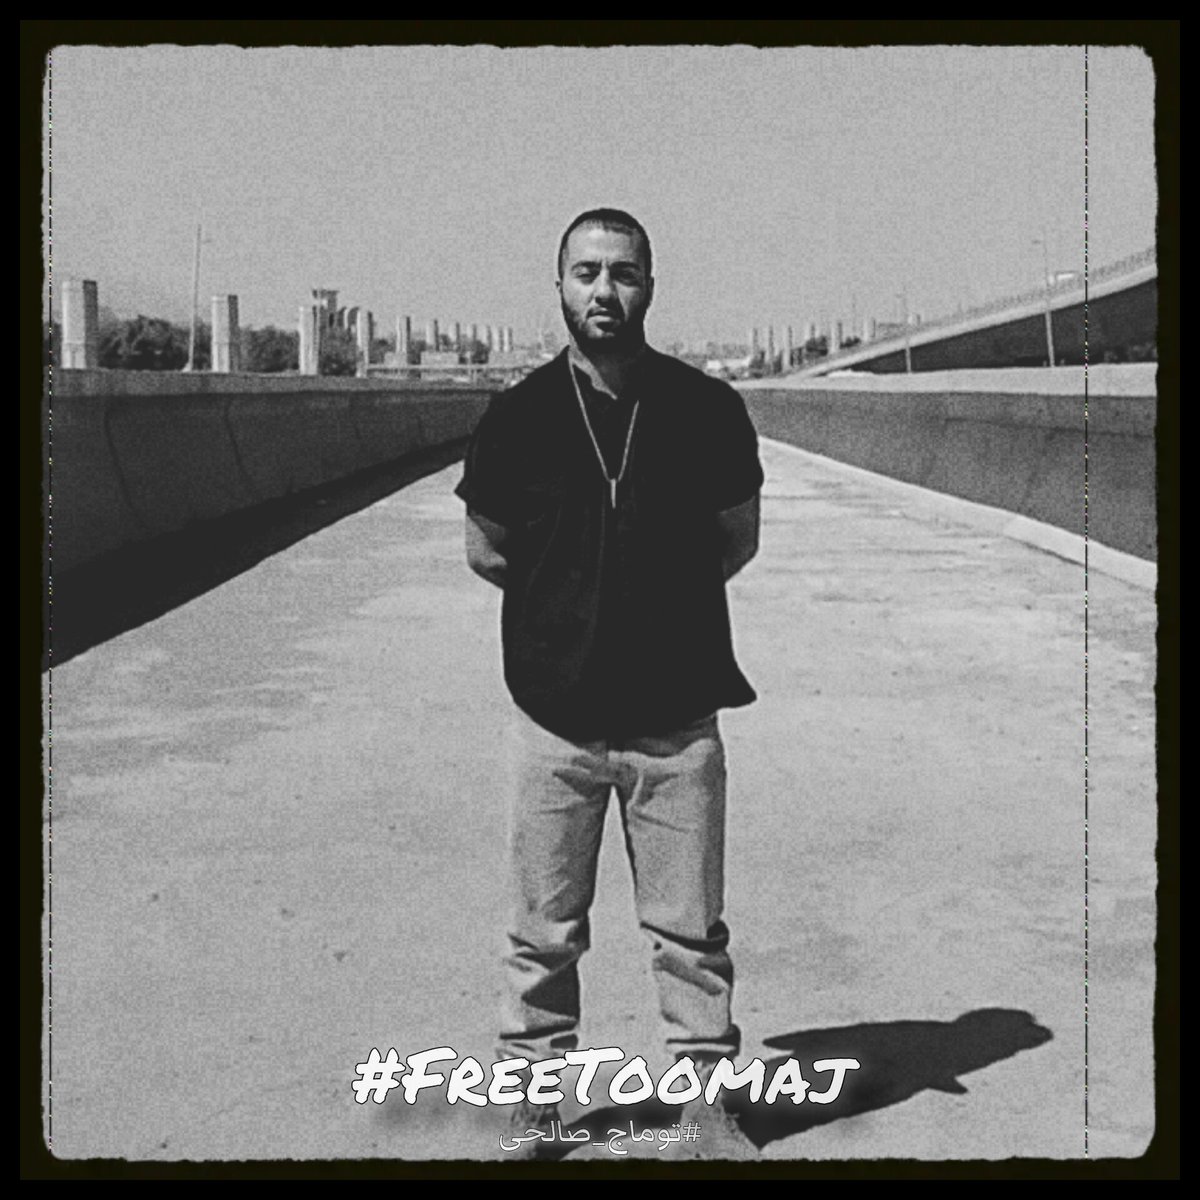 به جرمِ گفتنِ حقیقت‌ها، جانش در خطر است.
صدایش باشیم...

#توماج_صالحی 
#FreeToomaj